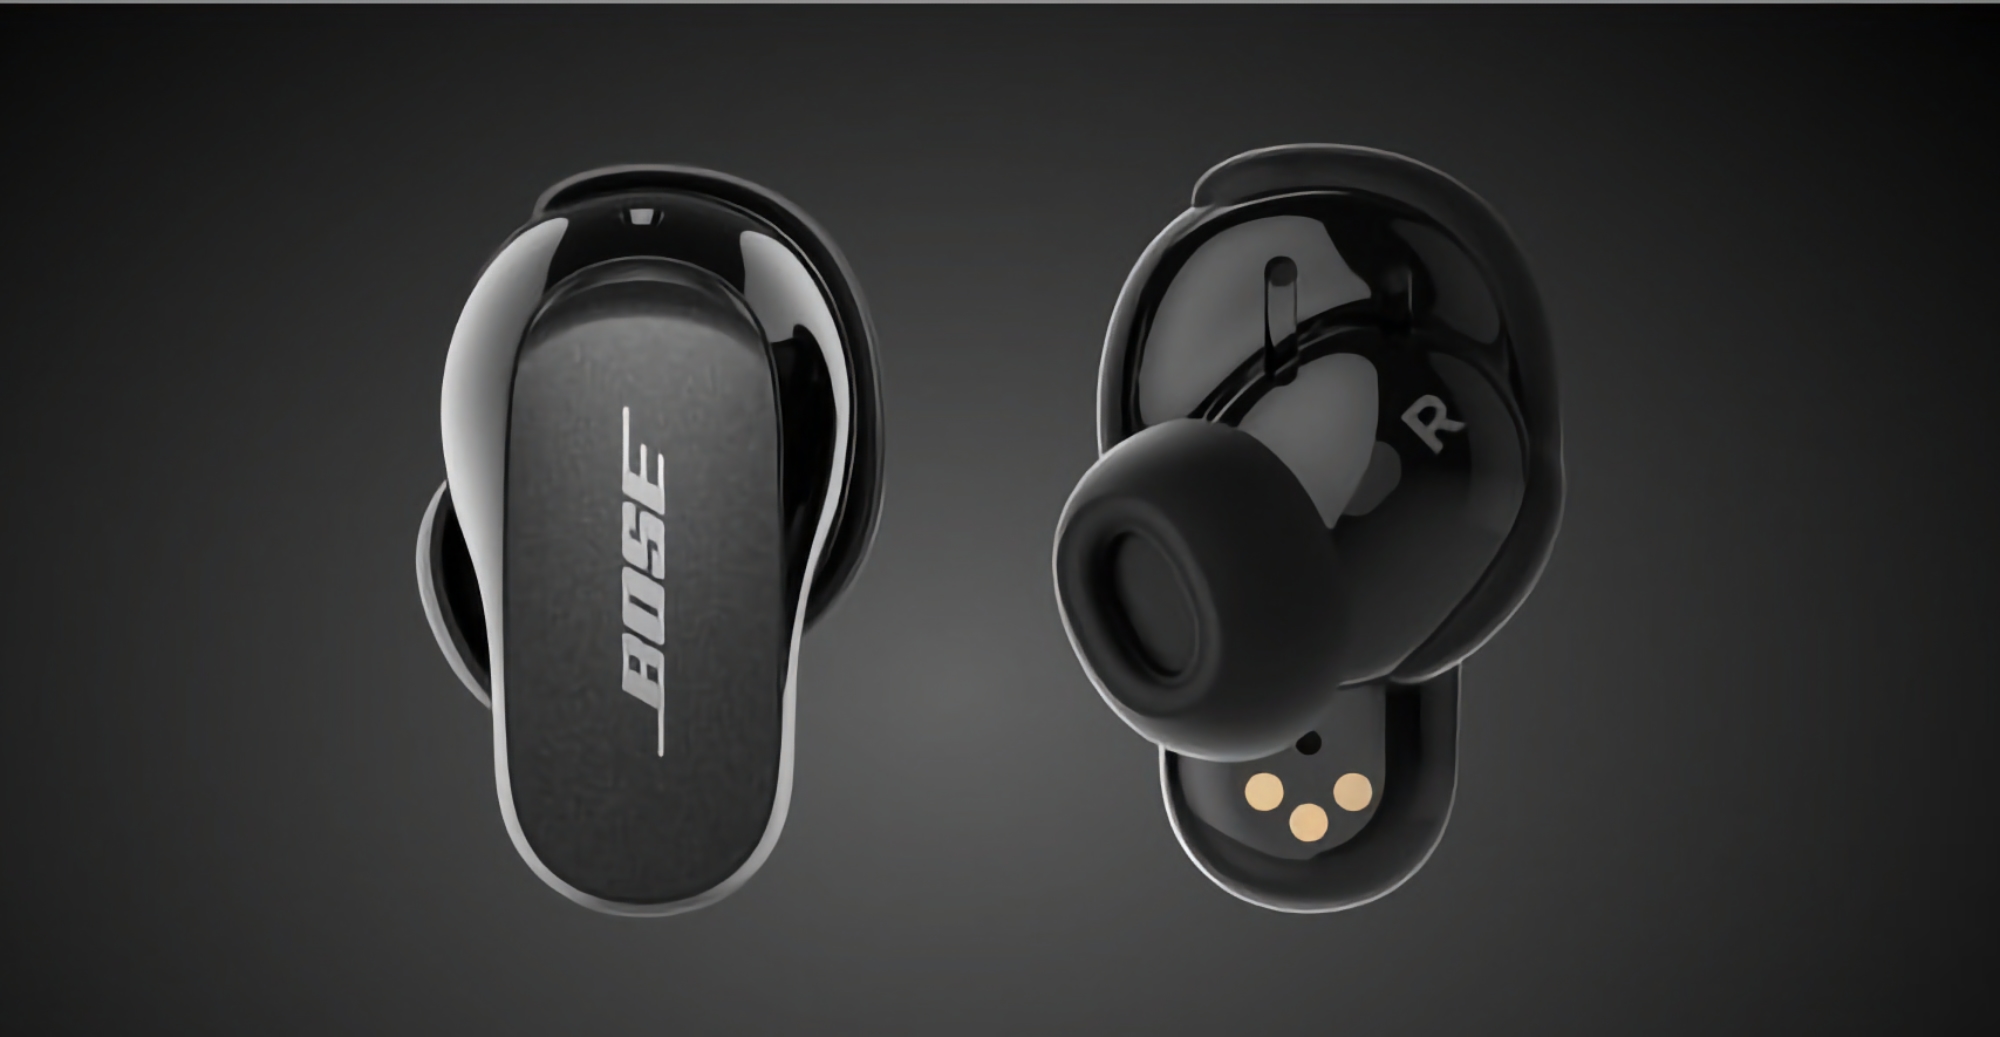 Флагманські TWS-навушники Bose QuietComfort Earbuds II з ANC та автономністю до 24 годин можна купити на Amazon зі знижкою $50